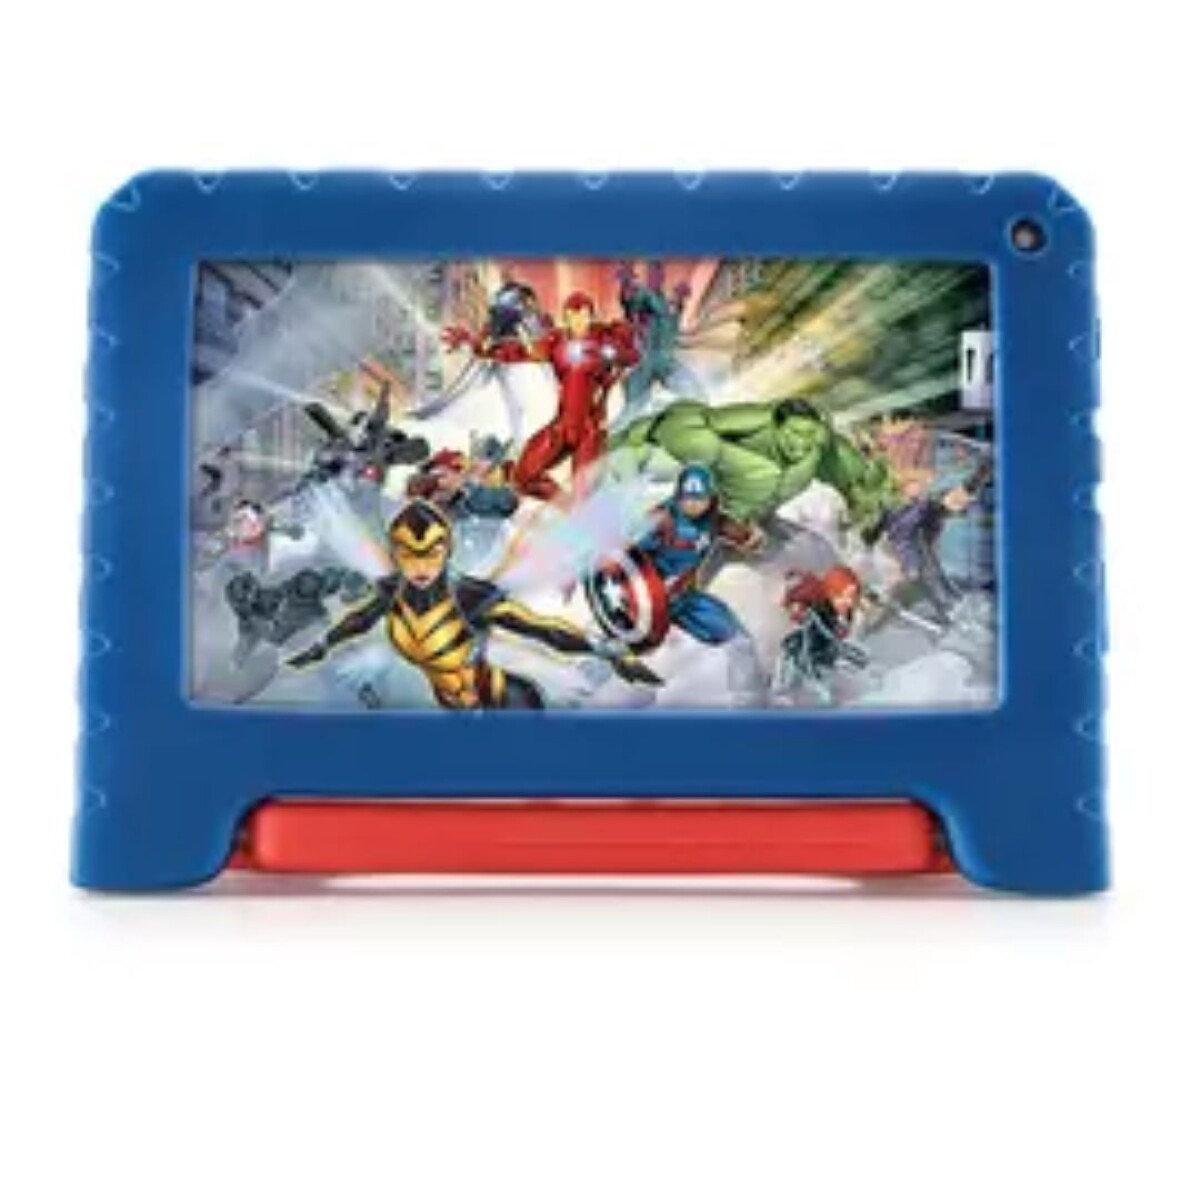 Tablet Kids Avengers 7 Wifi 2/32GB Multilaser NB602 - AZUL 